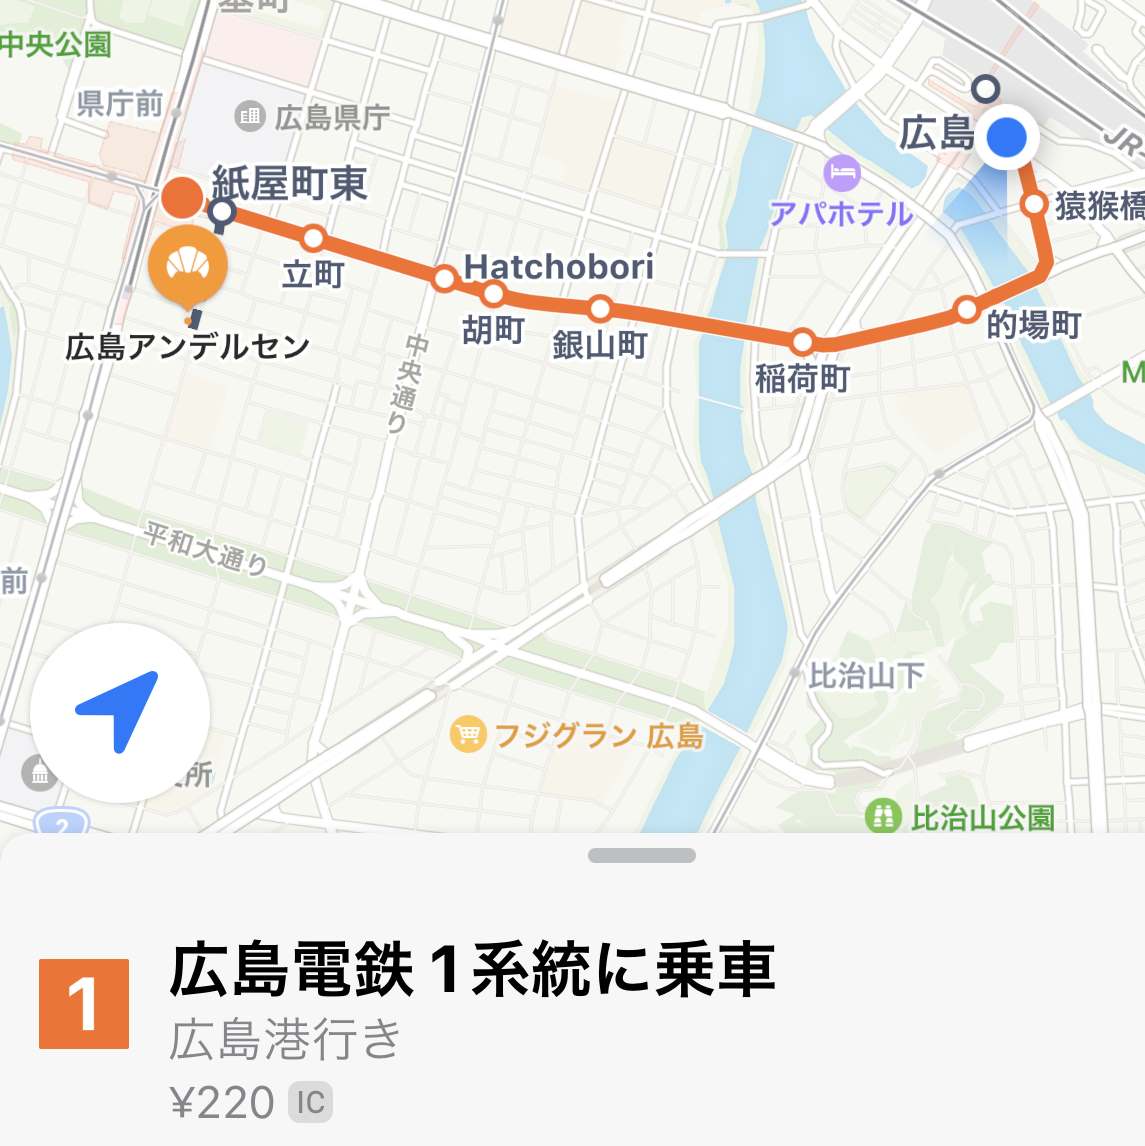 広島駅から「広島アンデルセン」への道程